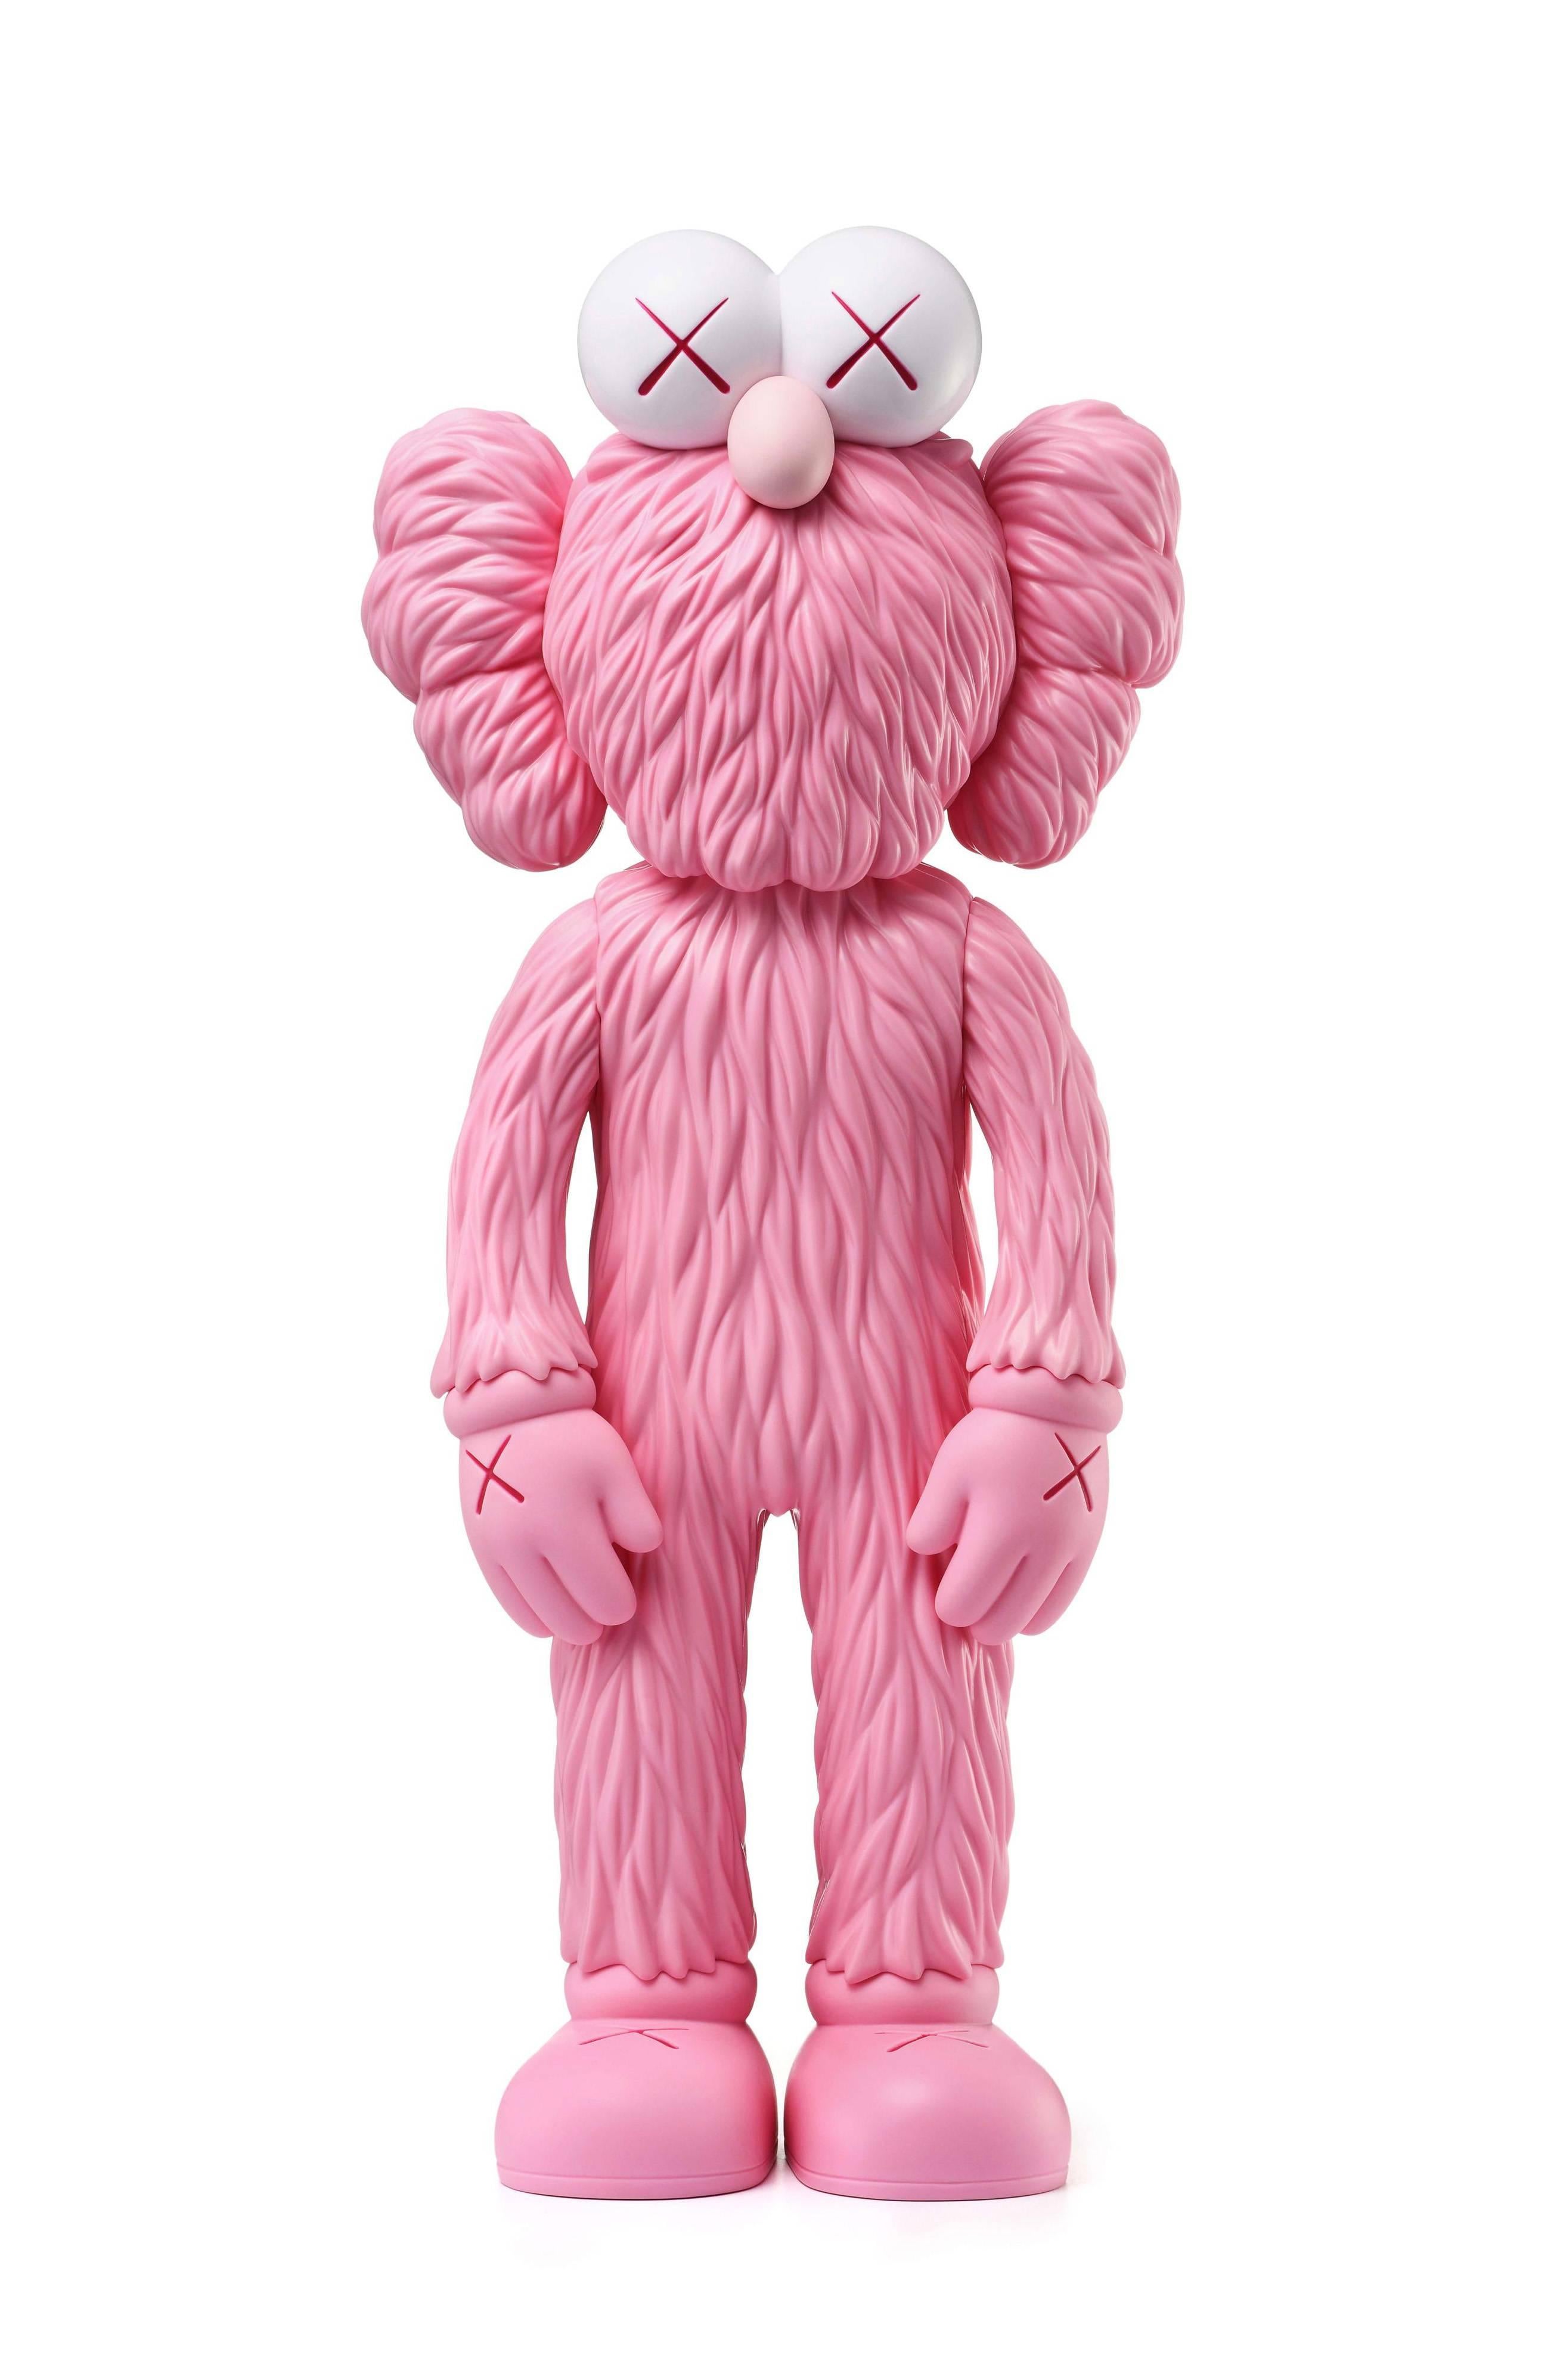 kaws pink figure